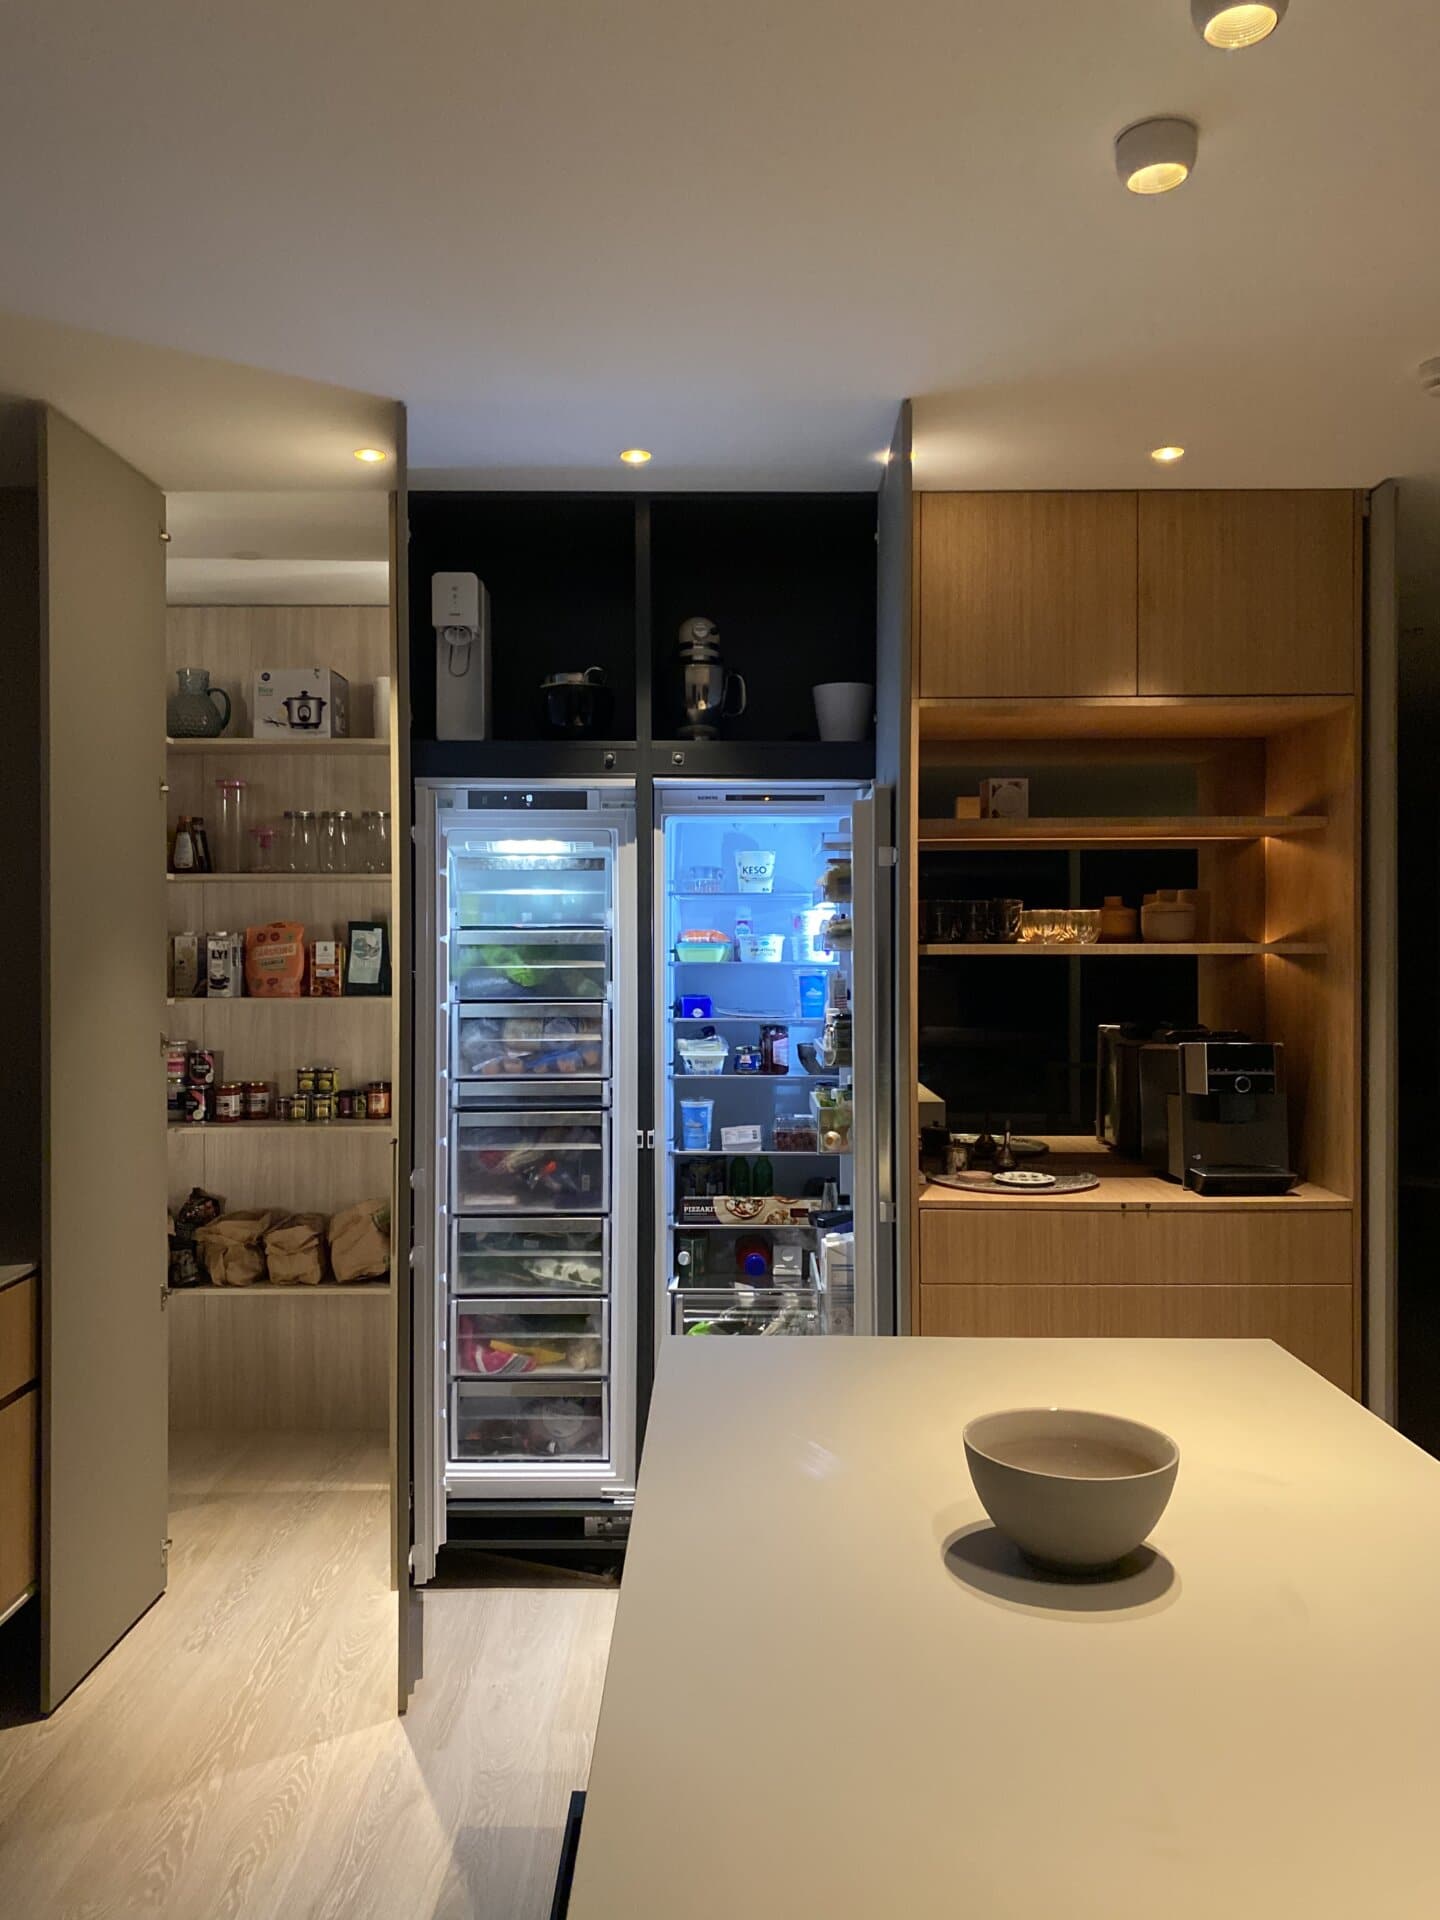 Stiligt - Ett kök med kylskåp och mikrovågsugn.